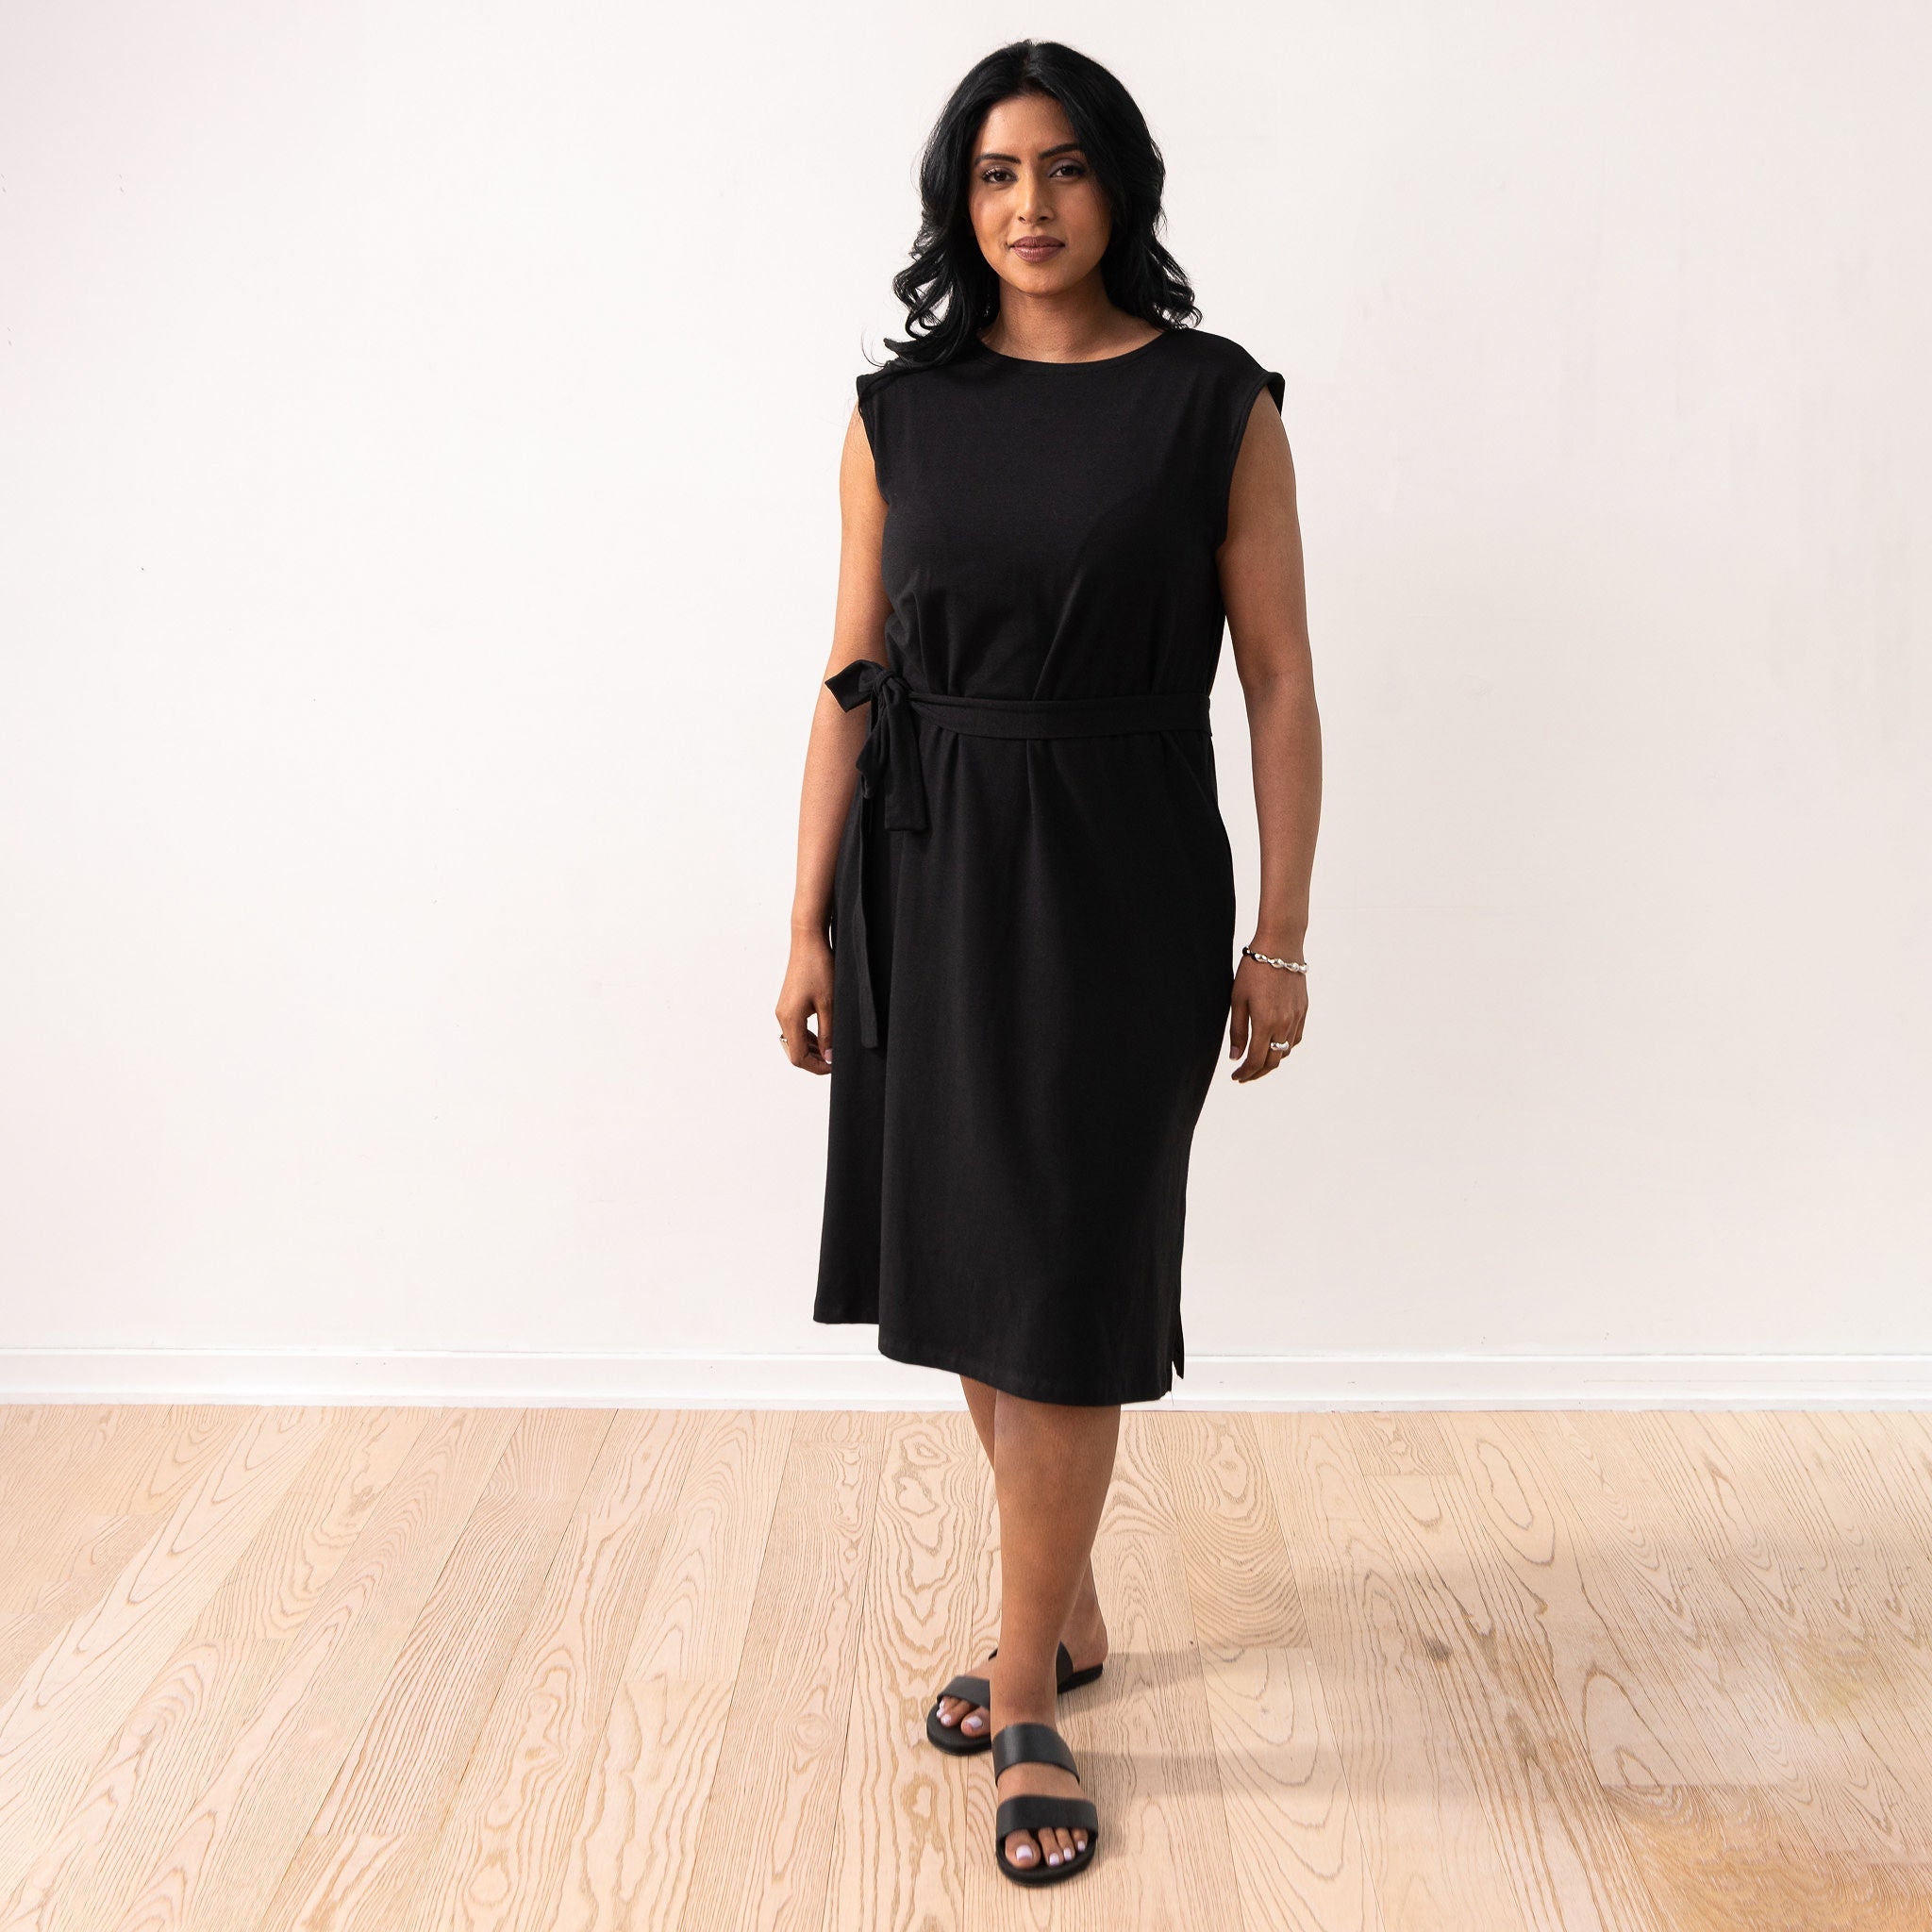 black sleeveless dress for women